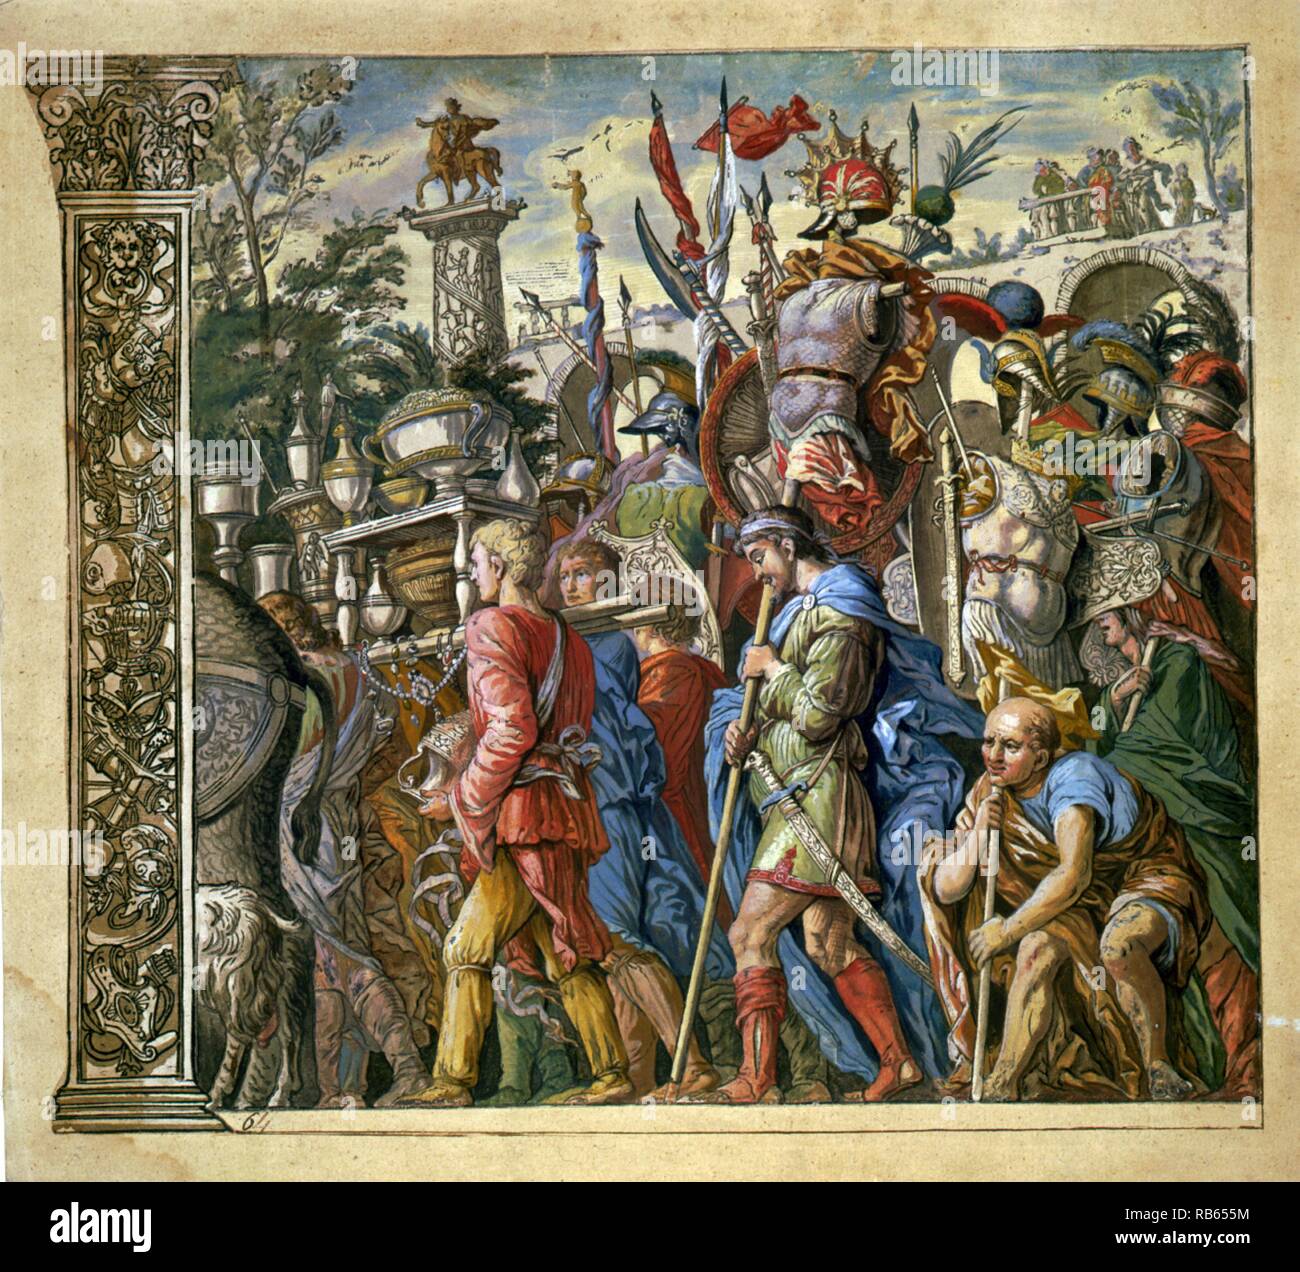 Le triomphe de Jules César par Andrea Andreani, 1599. Planche 6 de la série, montrant les gens en procession triomphale de Jules César Banque D'Images